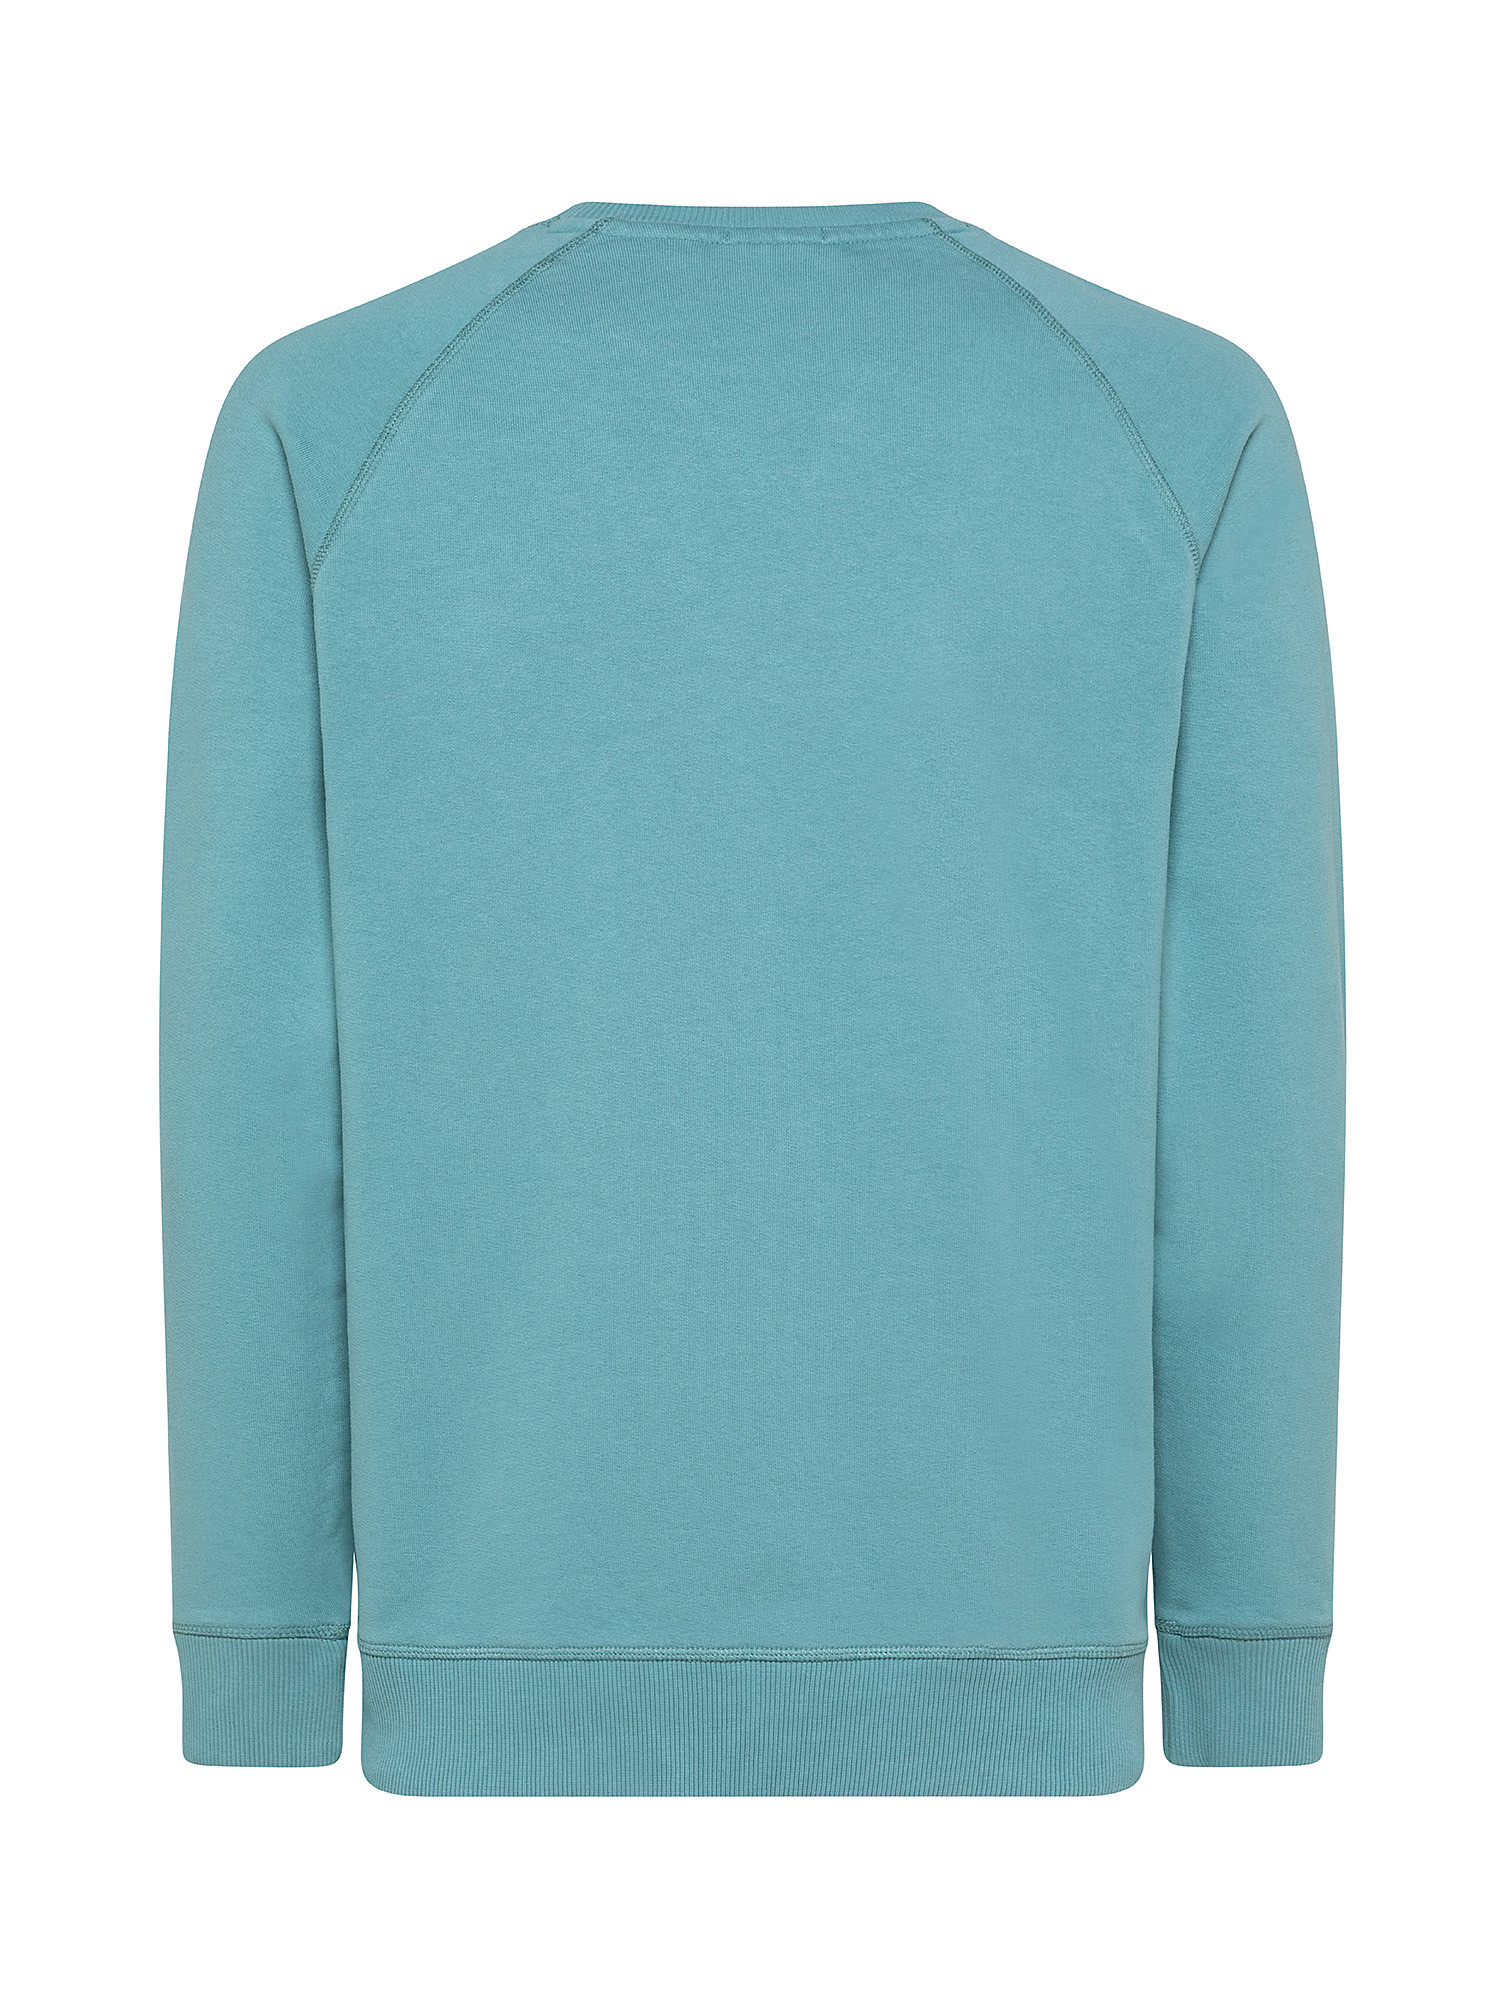 Men's Exeter River Sweatshirt, Light Blue, large image number 1